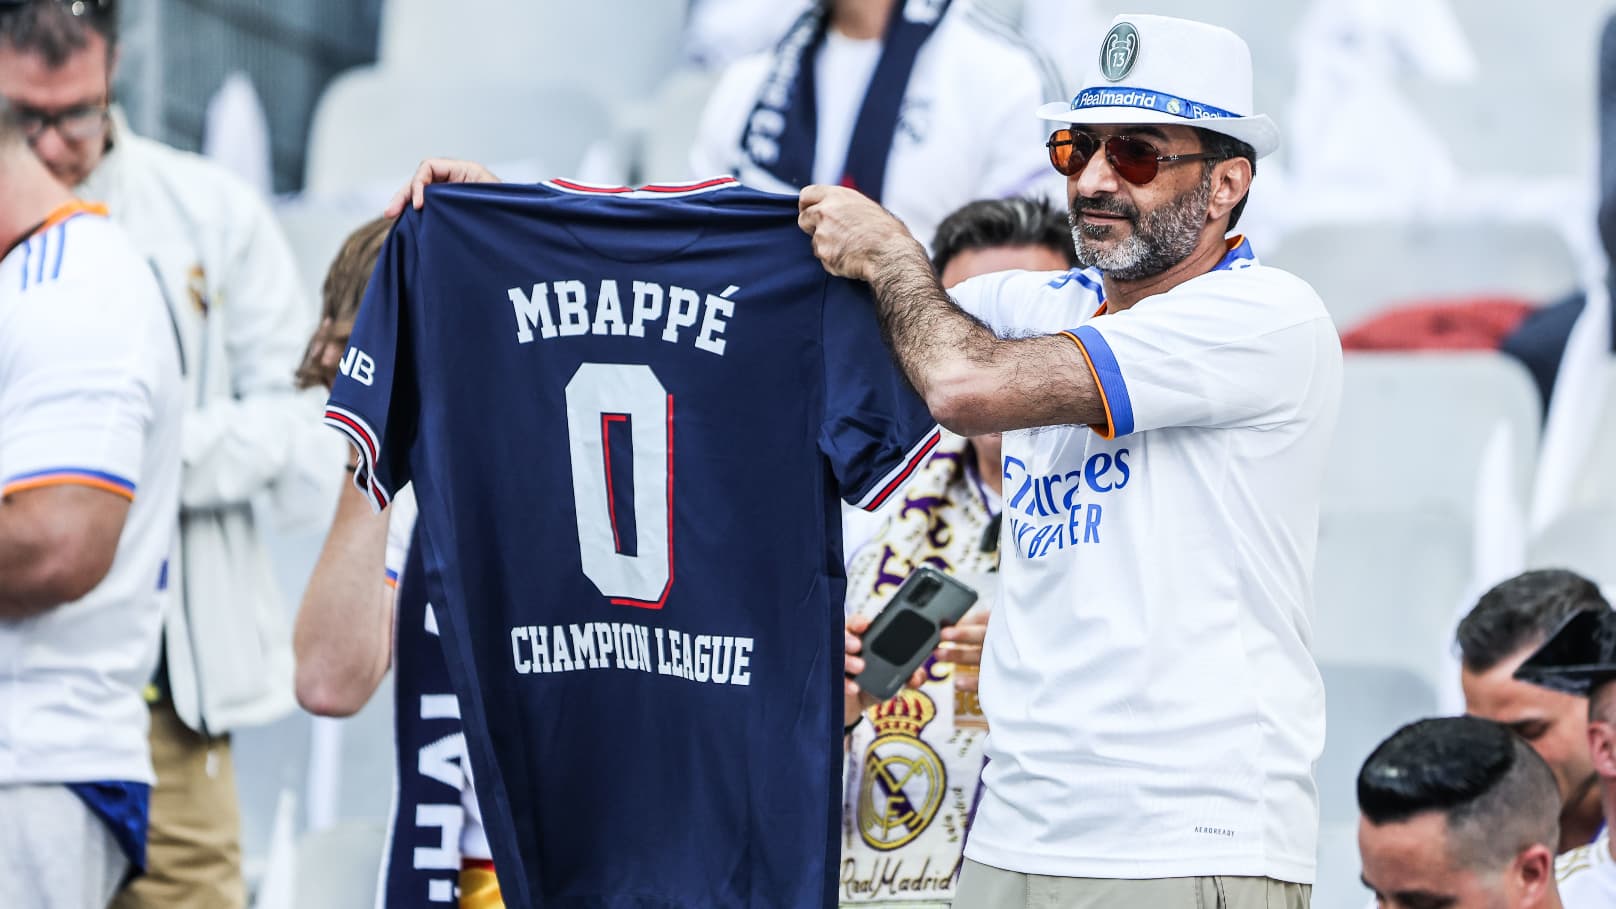 I veri tifosi sono ancora arrabbiati con Mbappe?  “Ci vorrebbe un gesto”, spiega un tifoso del Madrid